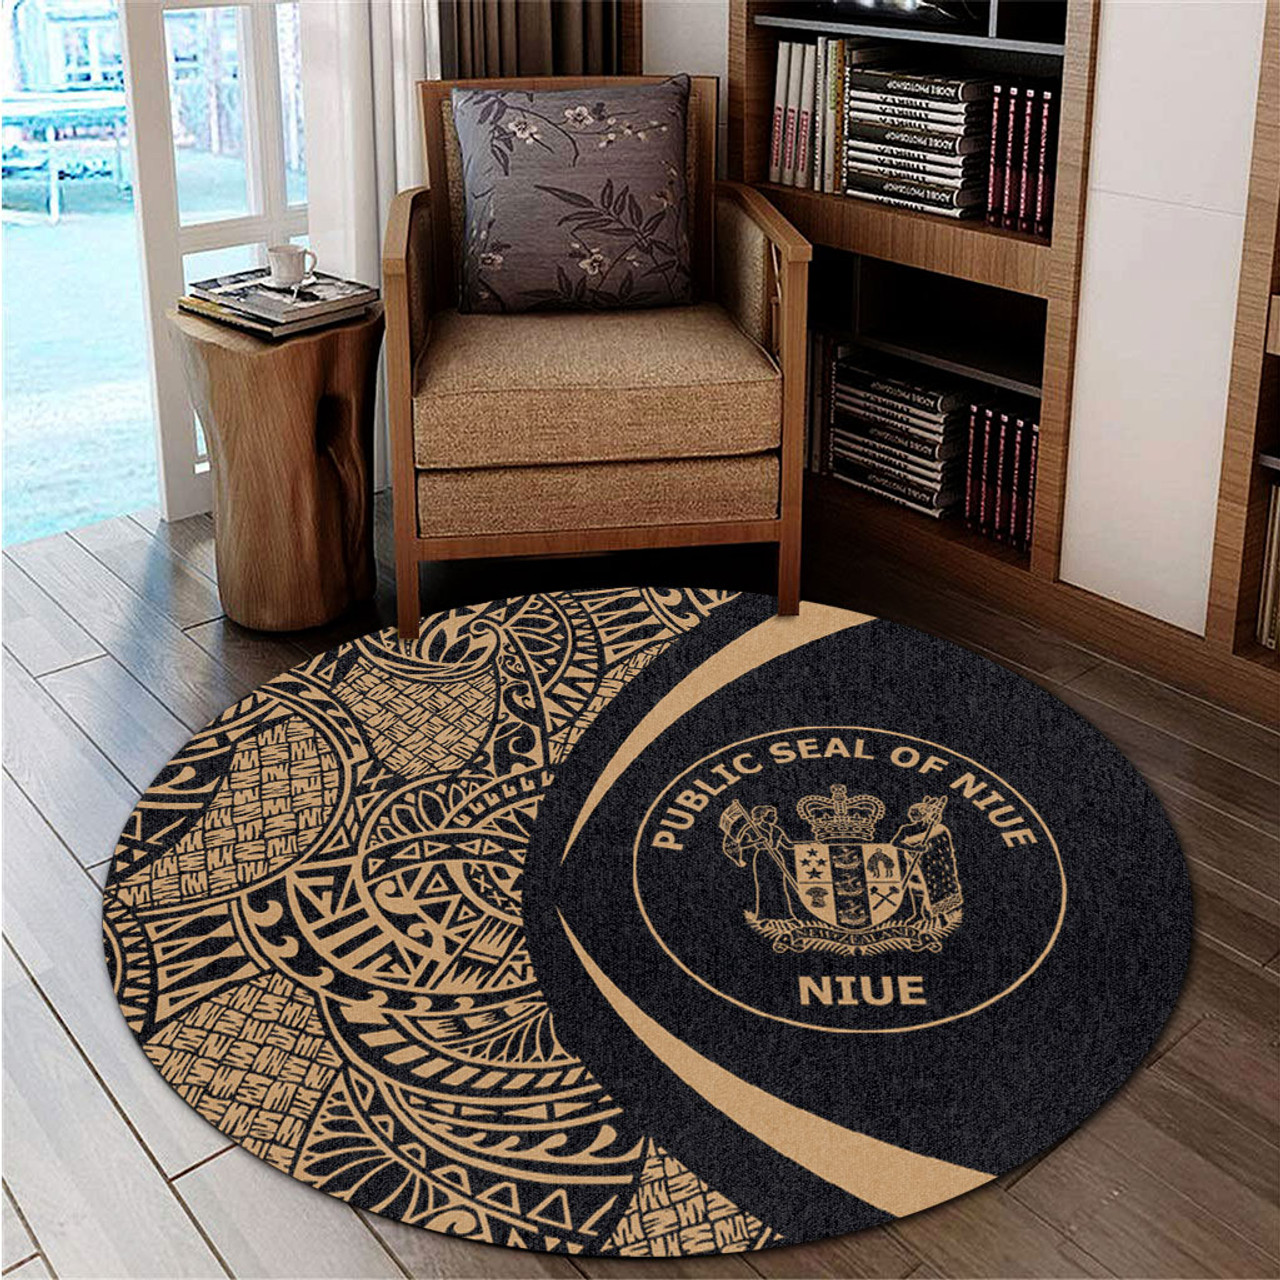 Niue Round Rug Lauhala Gold Circle Style